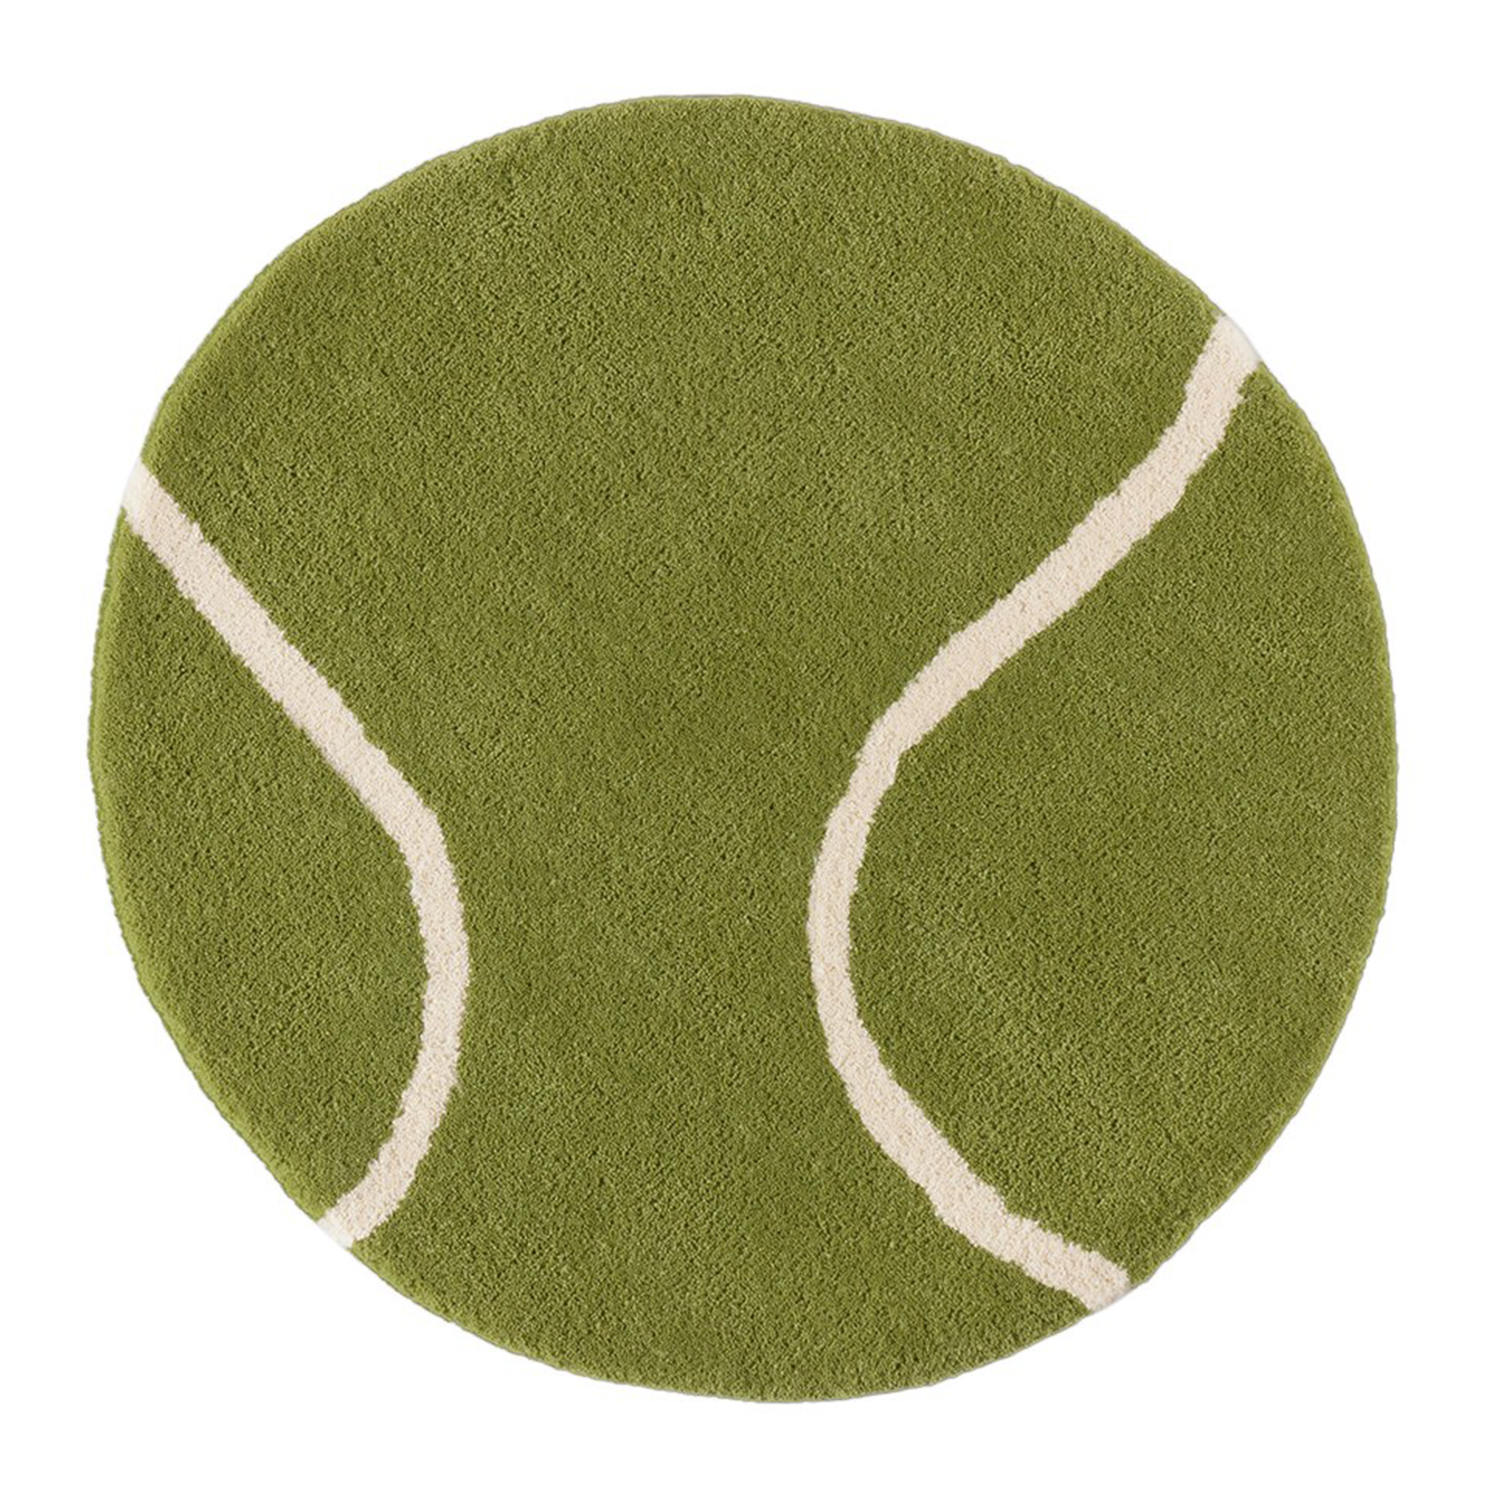 tennis rug